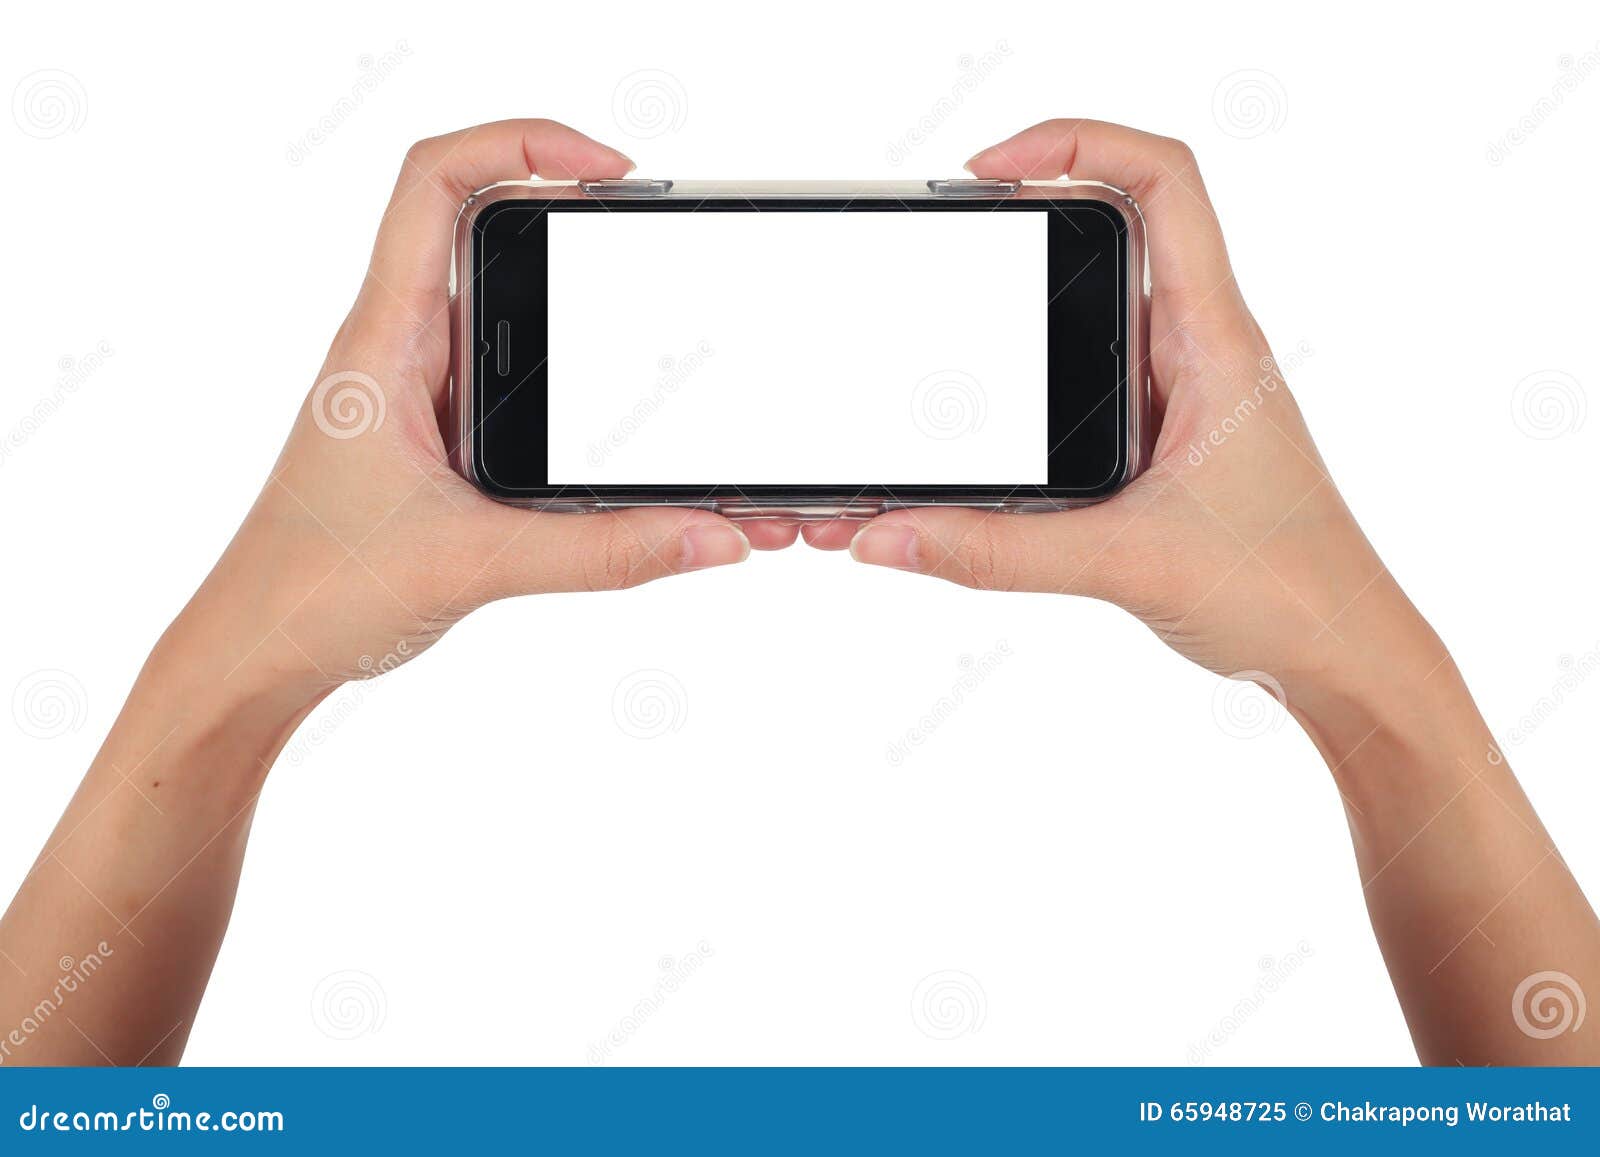 Телефон в руке горизонтально. Смартфон в руках горизонтальный. Рука держит смартфон горизонтально. Съёмка с руки смартфоном. Айфон горизонтальное видео